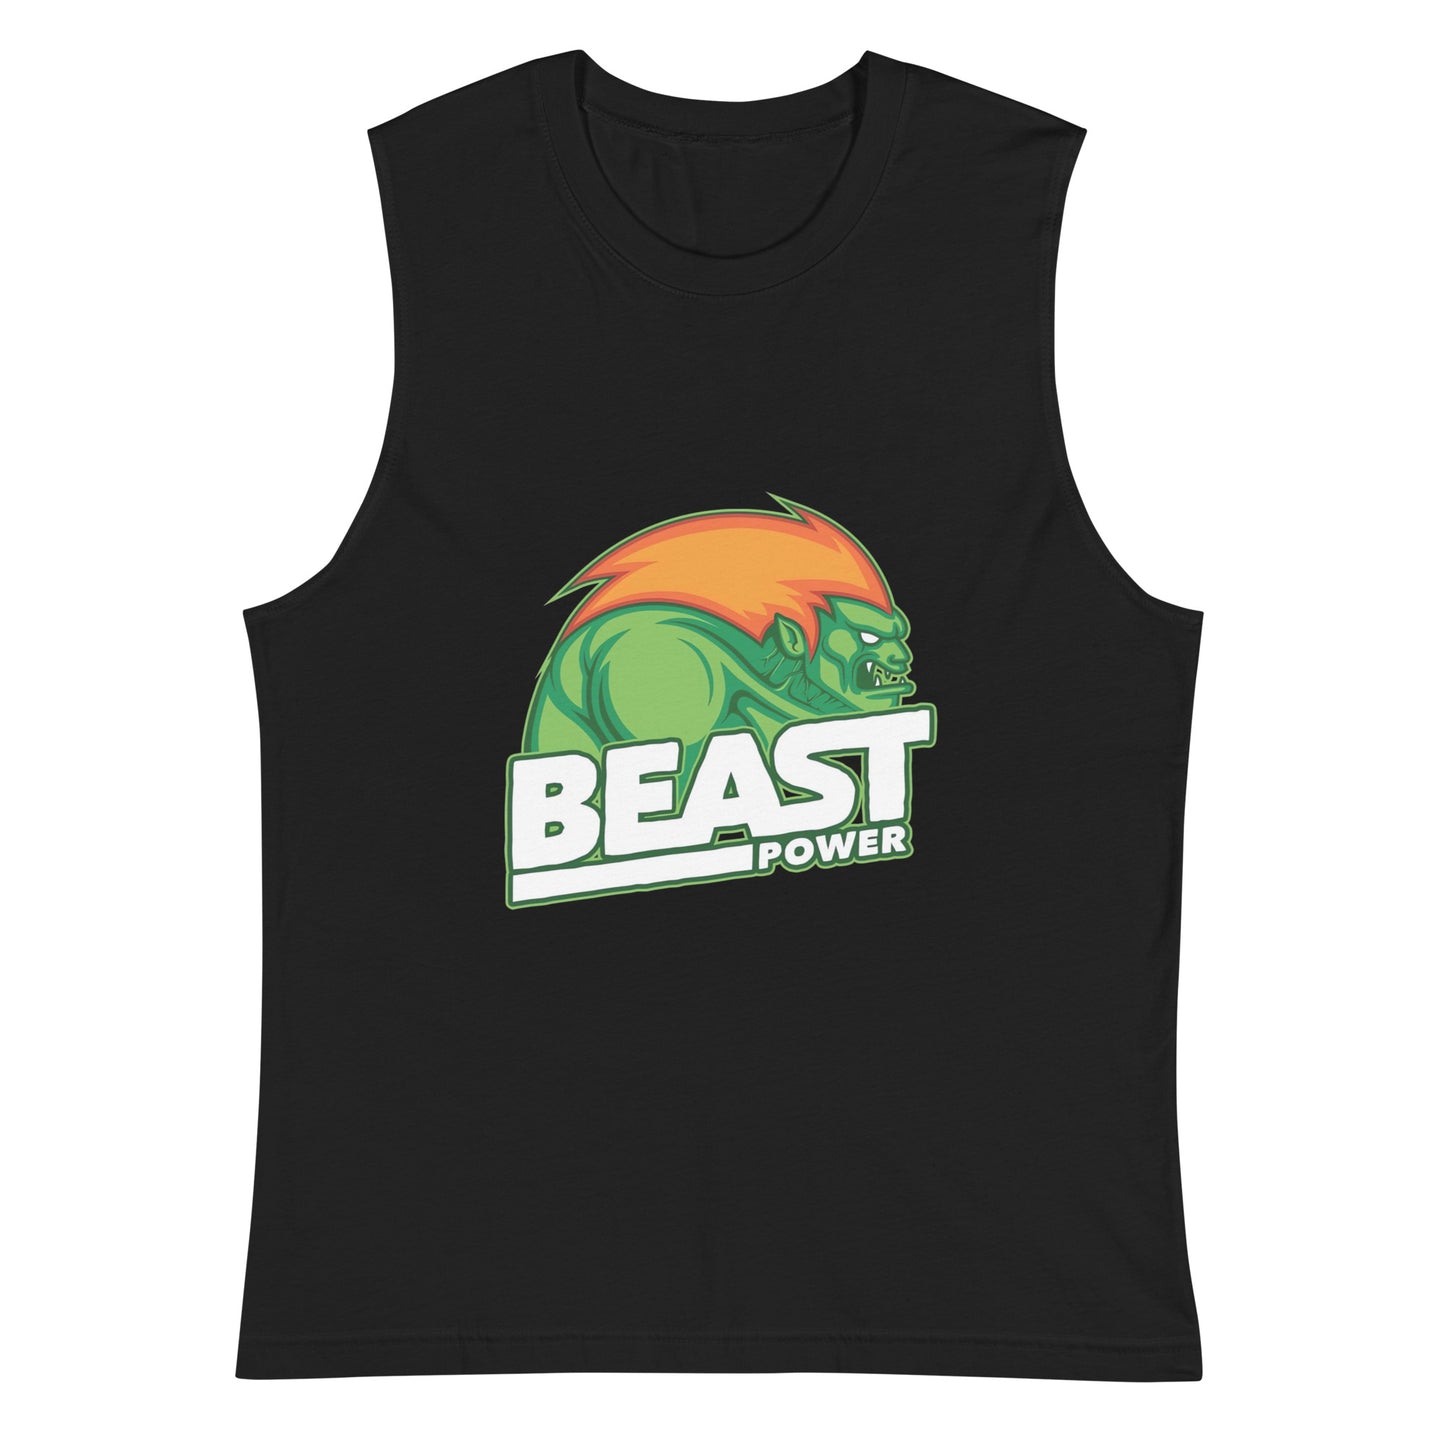 Camiseta sin mangas perfecta para entrenar, Camiseta Beast Power compra en línea y experimenta el mejor servicio al cliente. envíos internacionales.